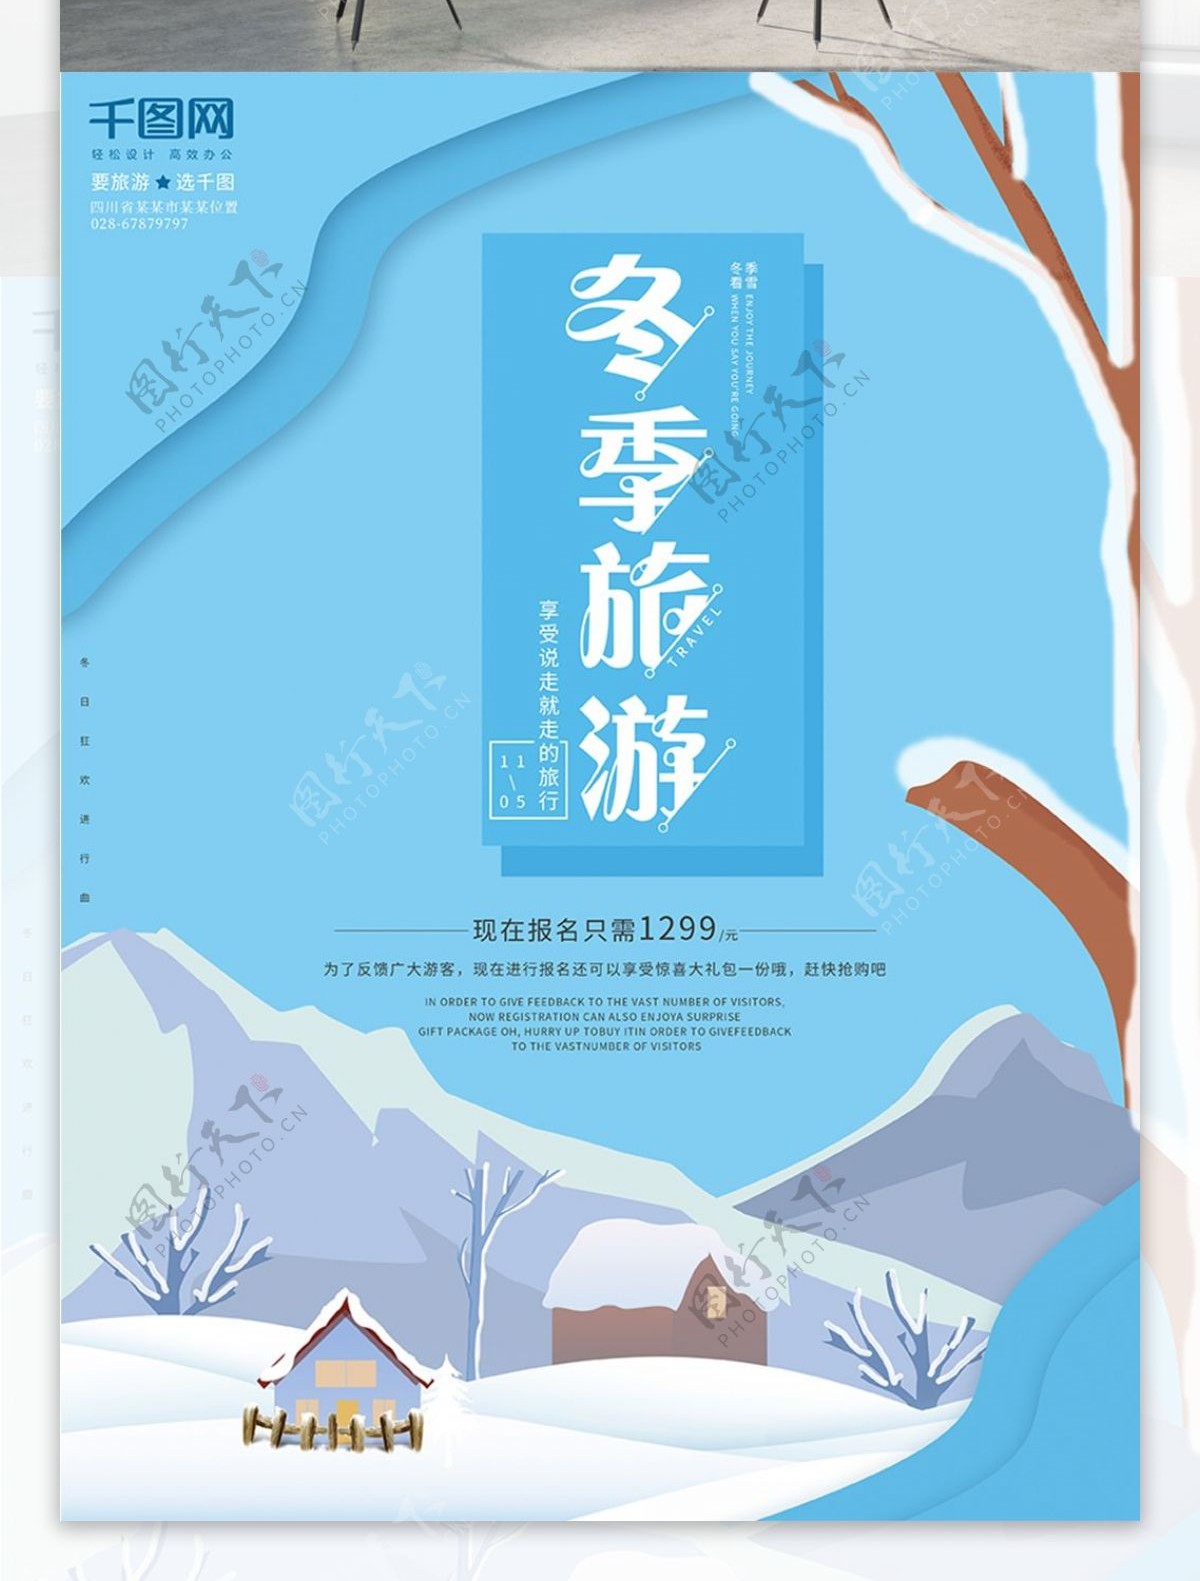 原创唯美插画冬季旅游旅行社冬天促销海报